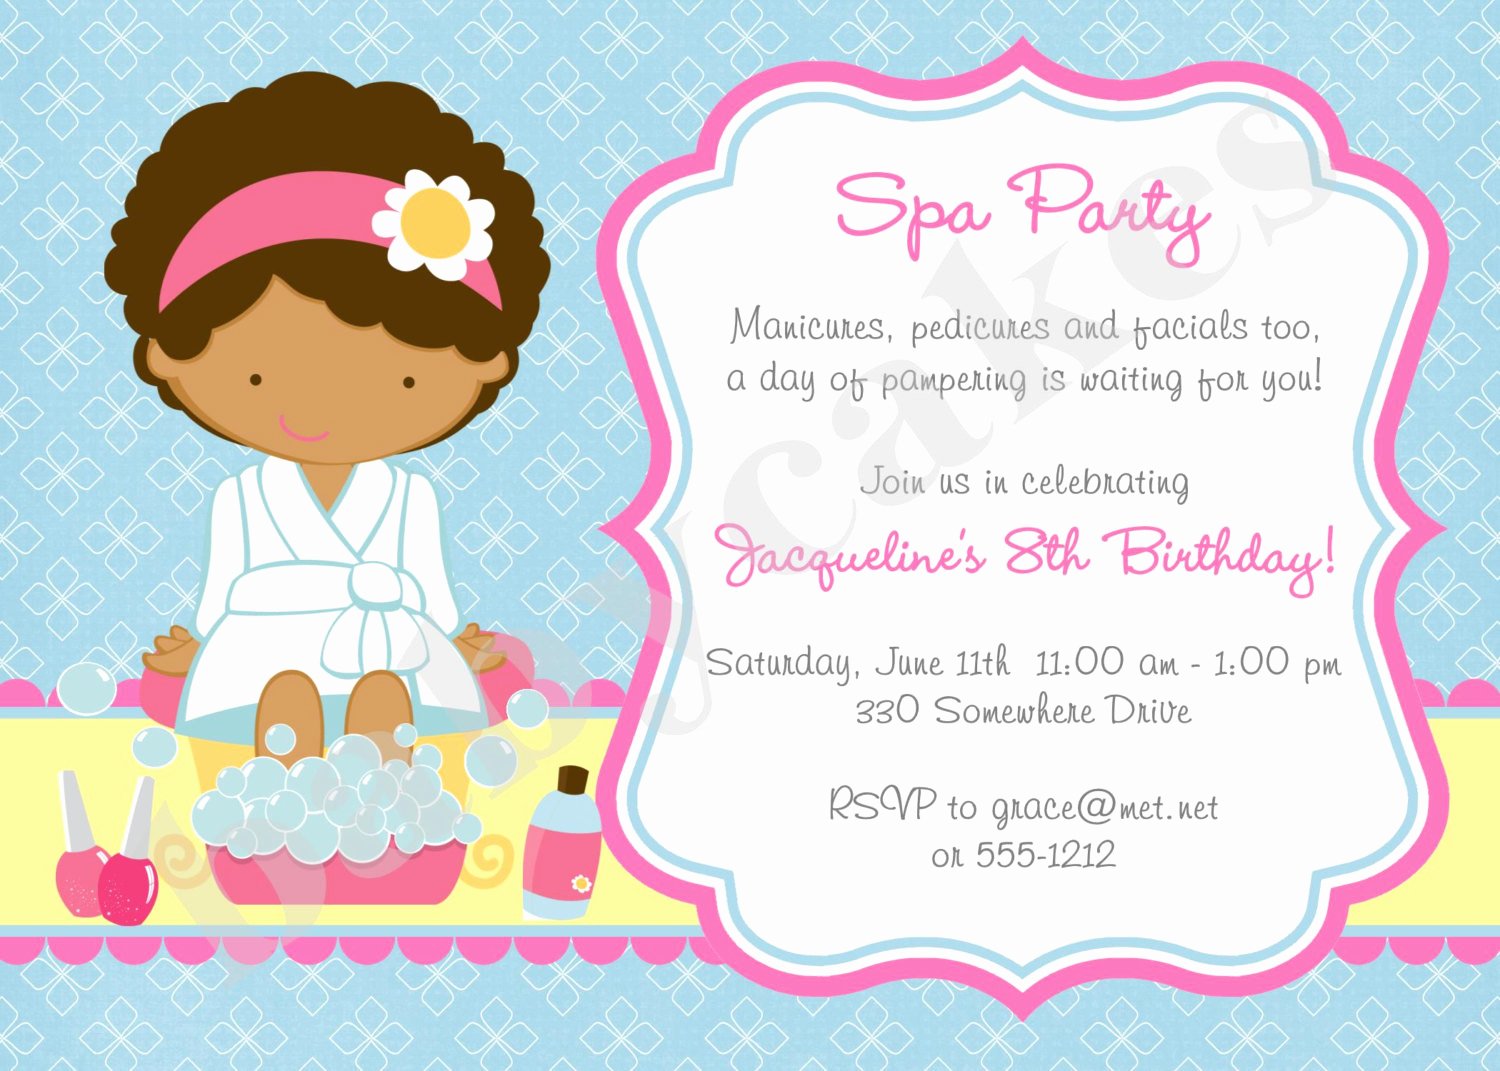 Spa Party Invitation Wording Unique Spa Party Invitation Spa Birthday Party Invitation Invite Spa